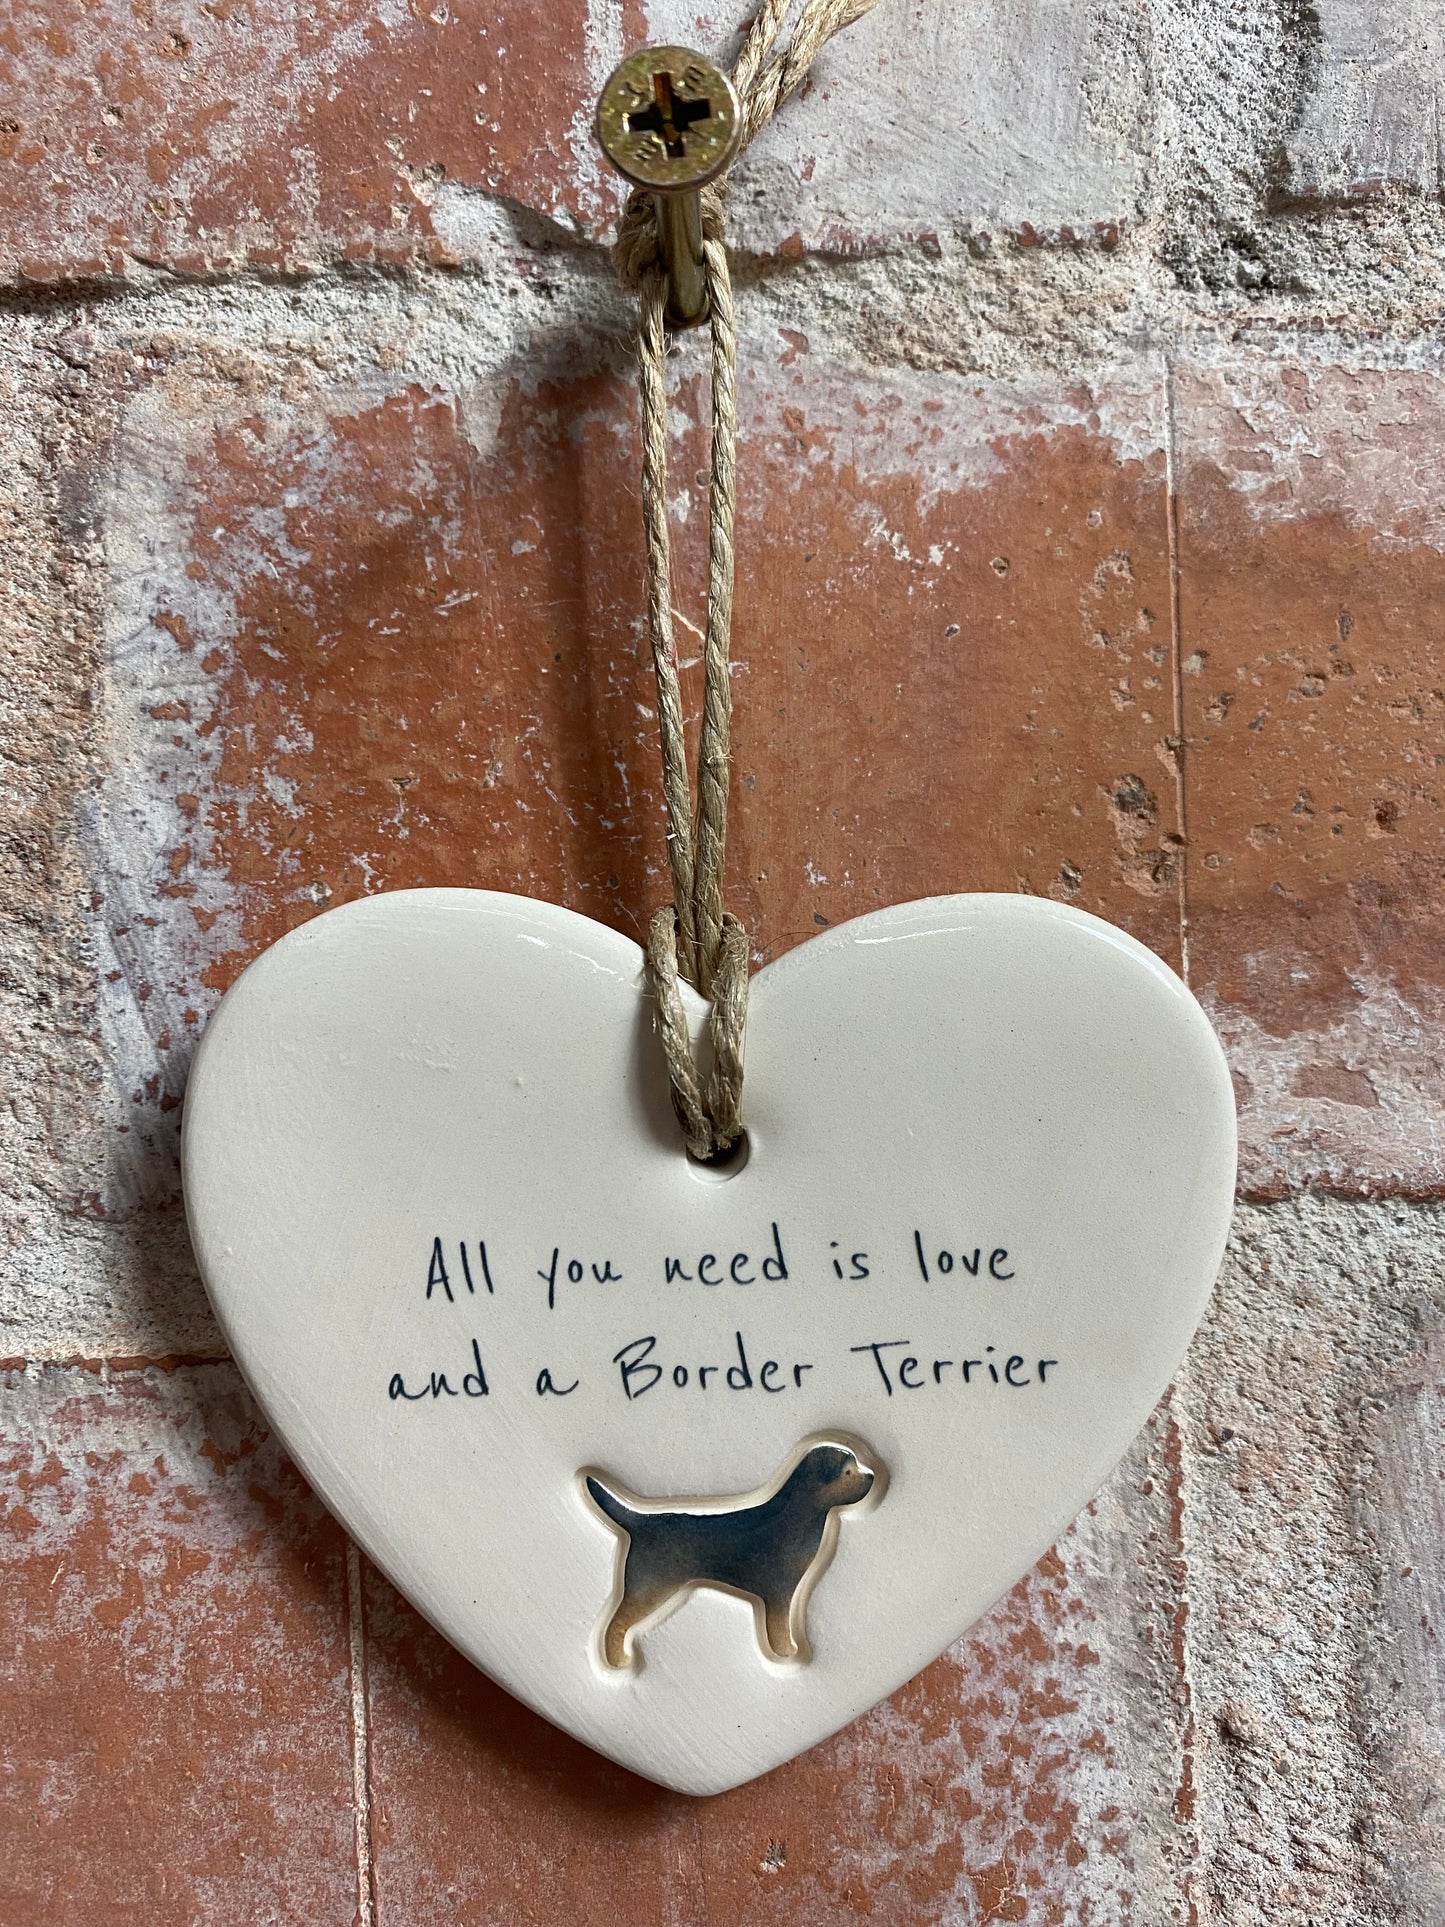 Border Terrier ceramic heart